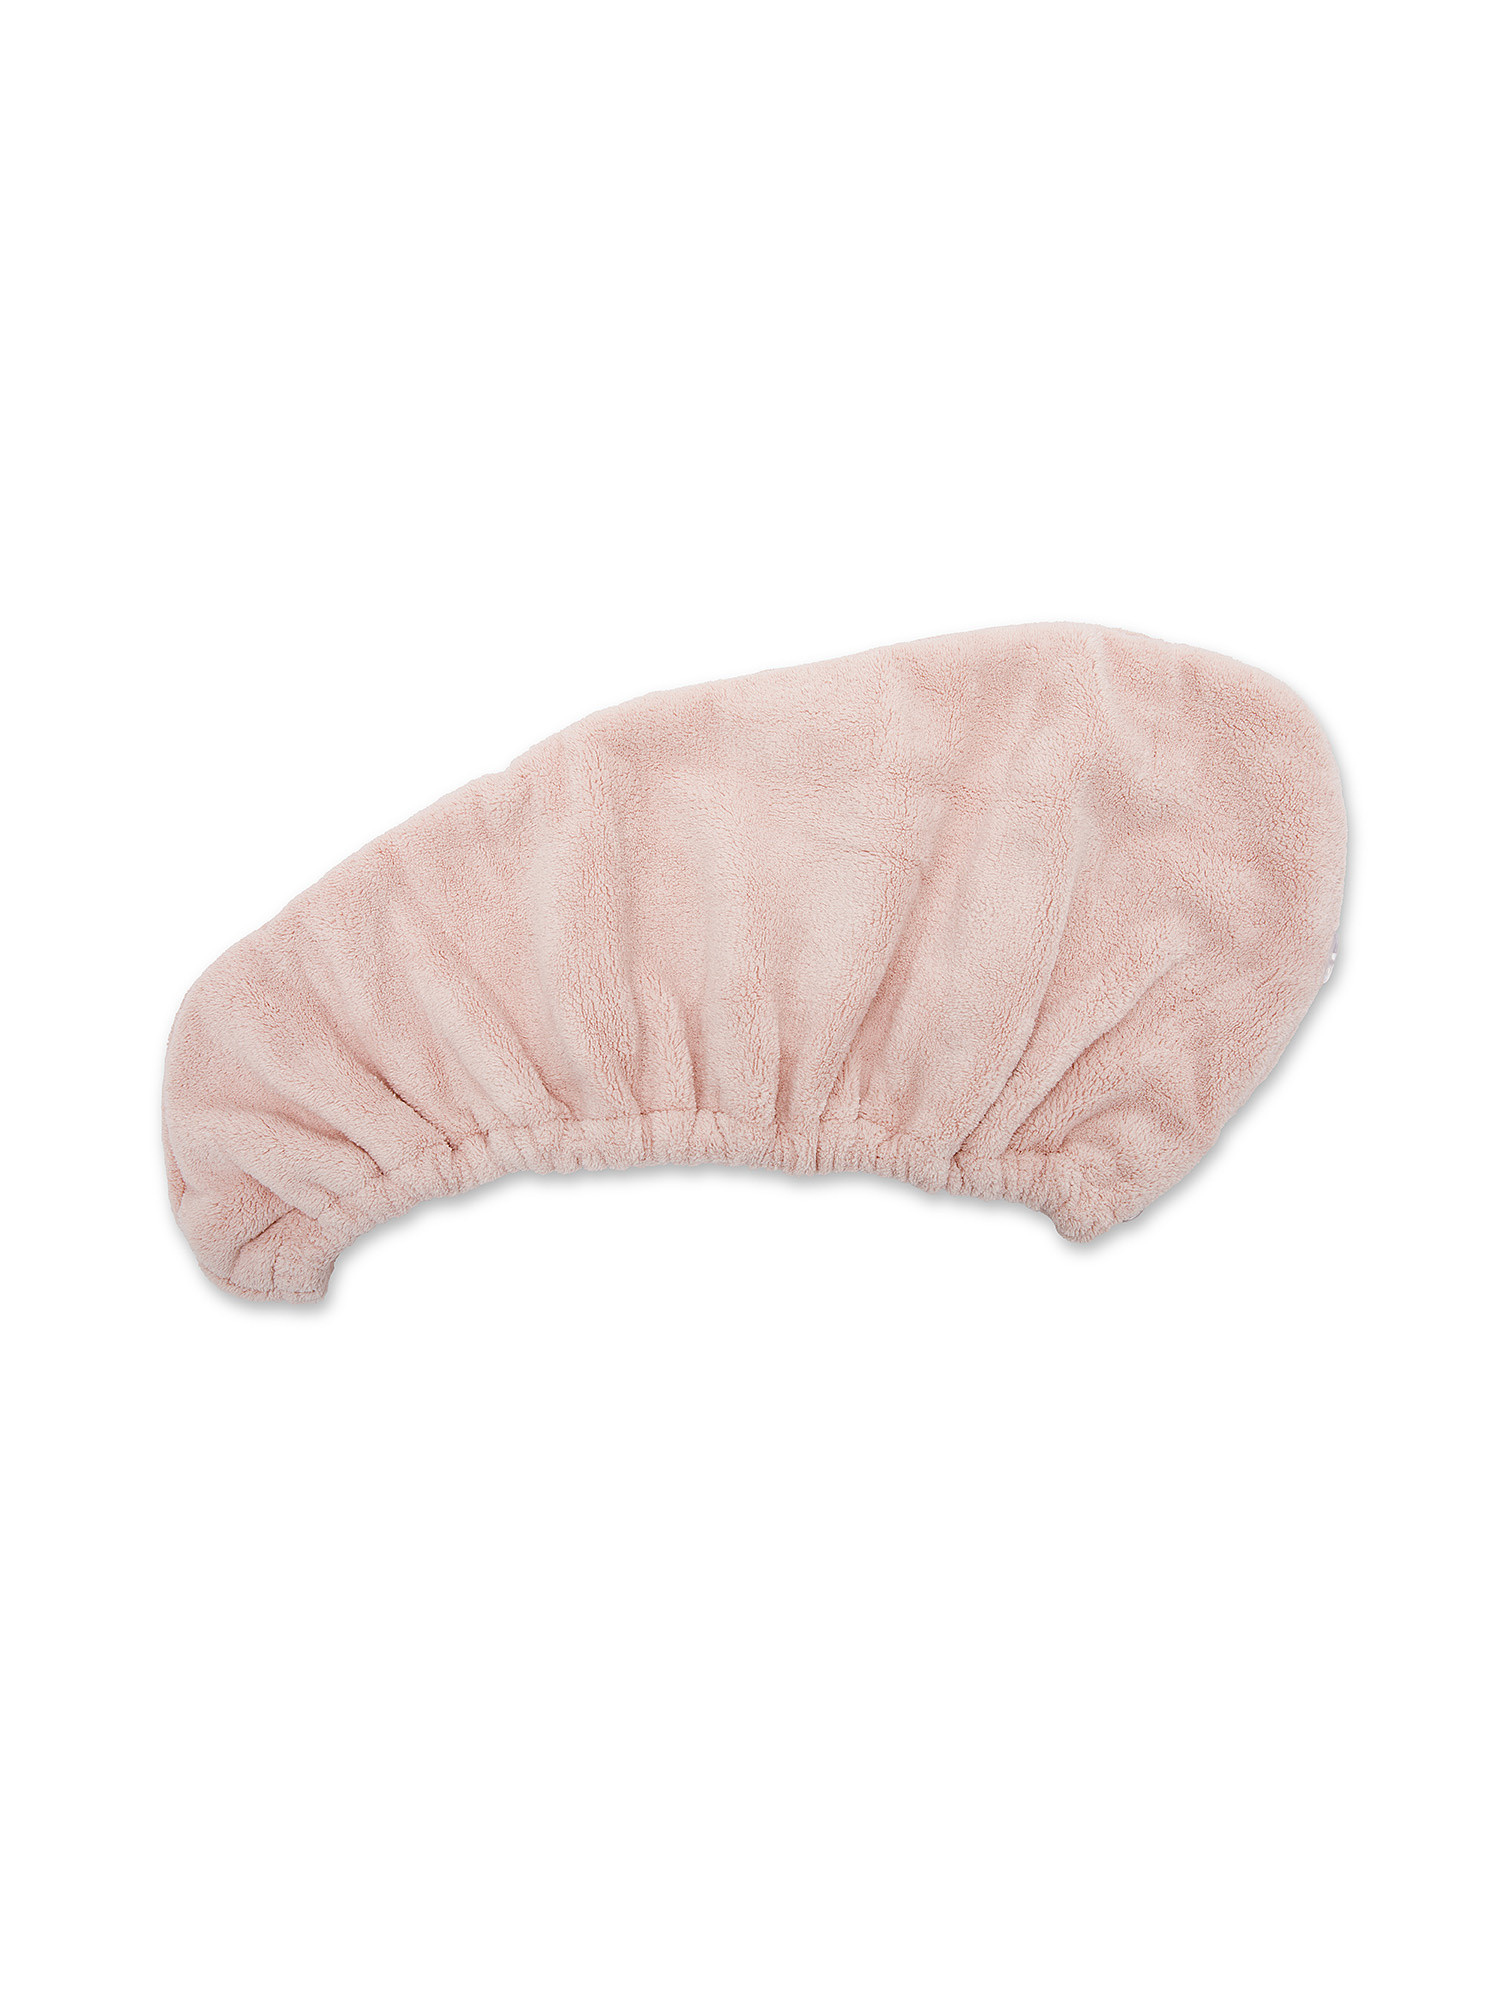 Microfiber hair turban, Pink, large image number 3